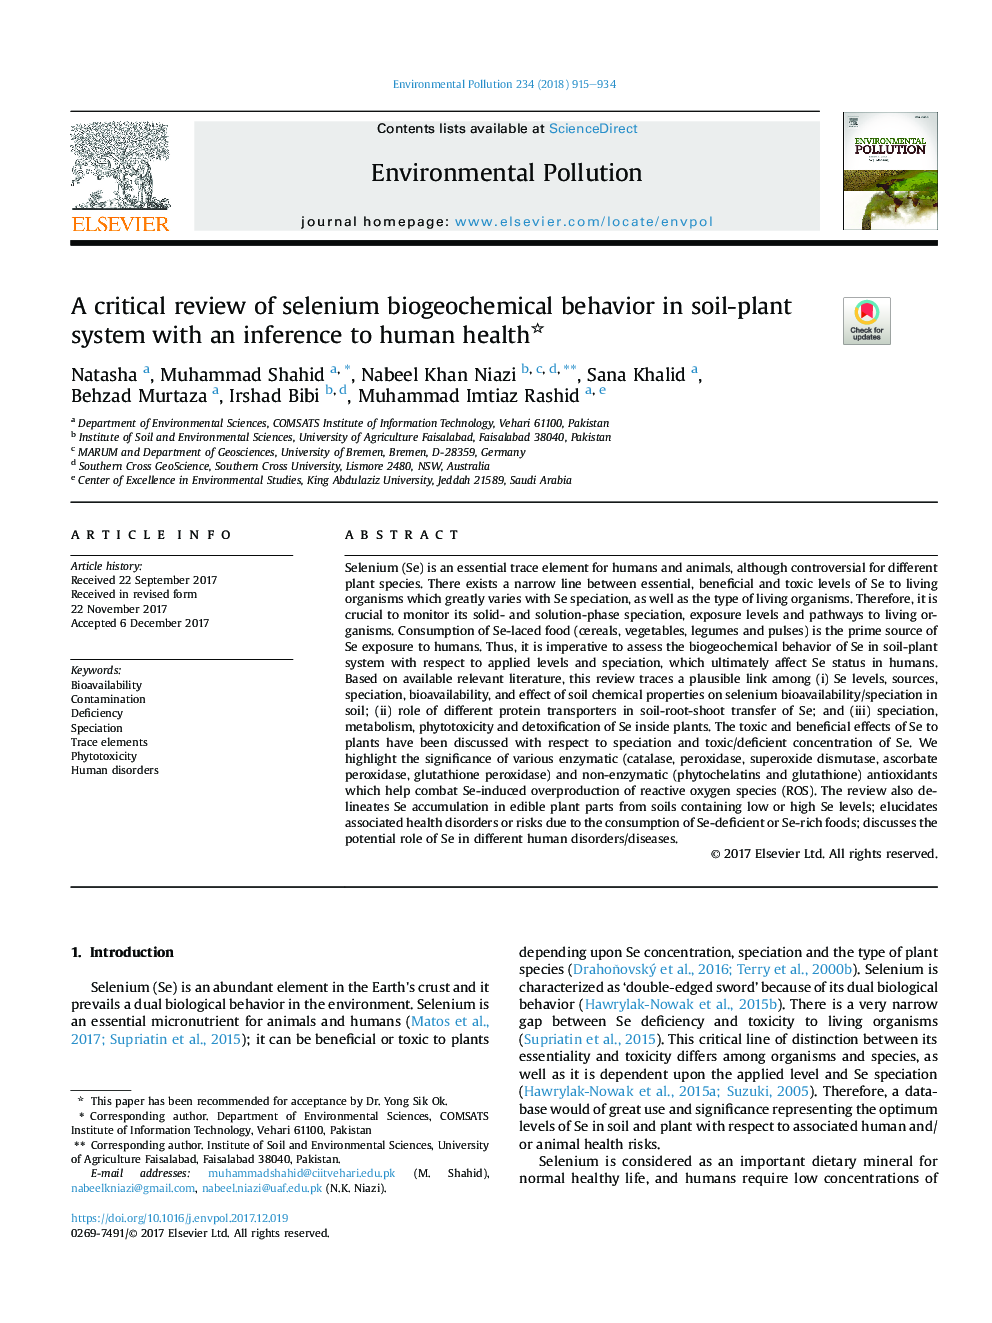 بررسی انتقادی از رفتار بیولوژیکی شیمیایی سلنیوم در سیستم خاک-گیاهی با استنباط به سلامت انسان 